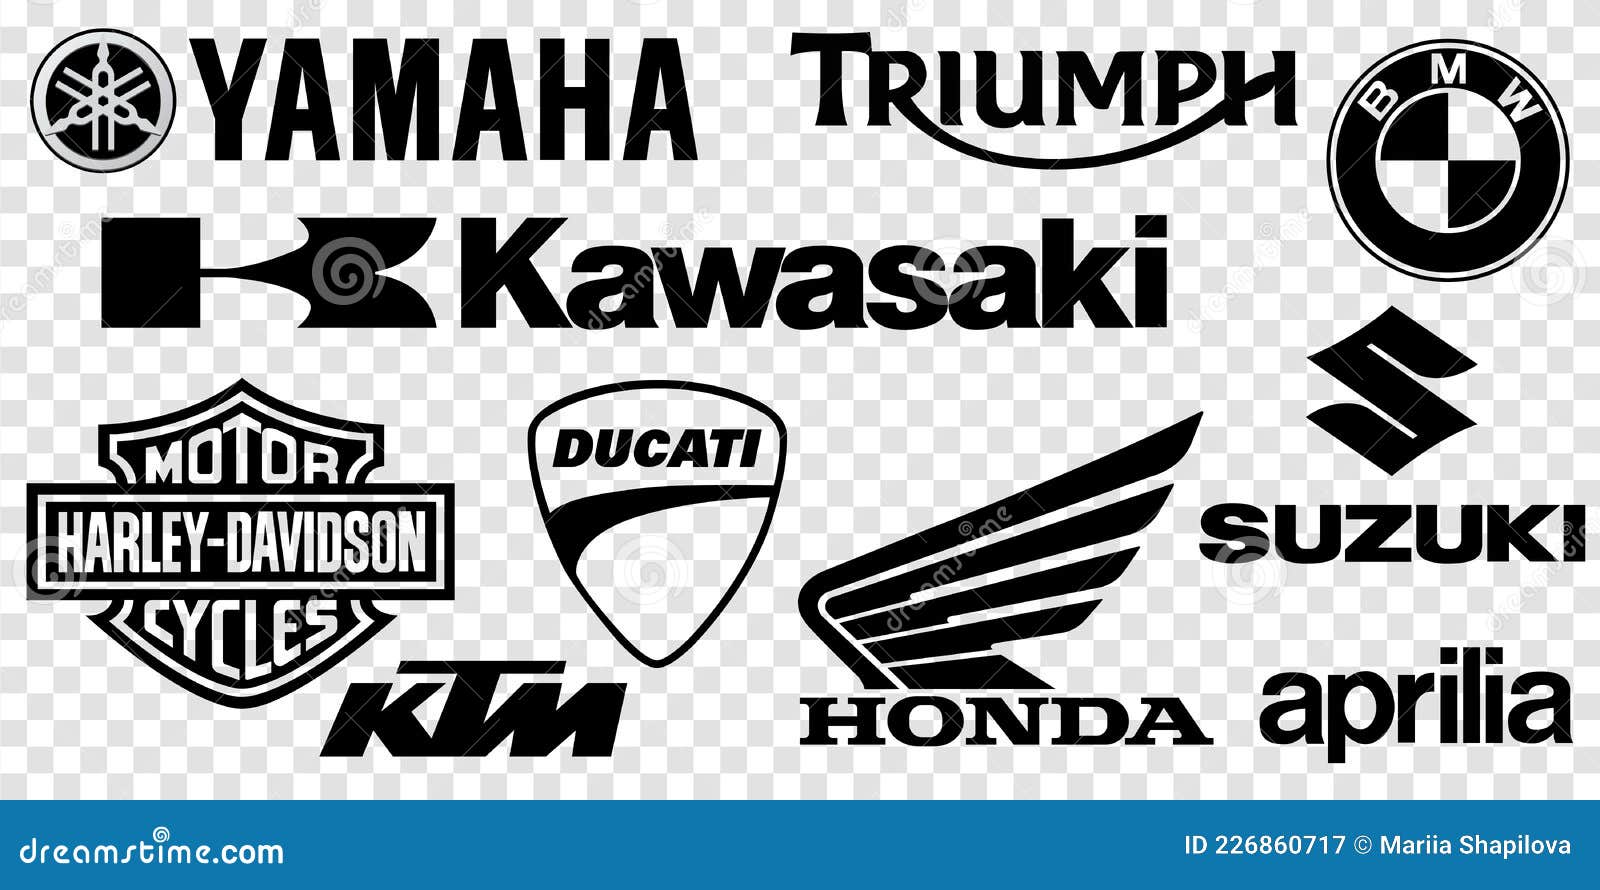 KTM DUKE 390 #KTM DUKE 390 #KTM Lover 😘 #KTM Duke lovers 😘🥰✨ #ktm lover  😘 ktm bike 🏍️ super bike 🏍️ hero bike 💪ktm bikes lovers ❤️ #ktm duk  lovers ♥️😎